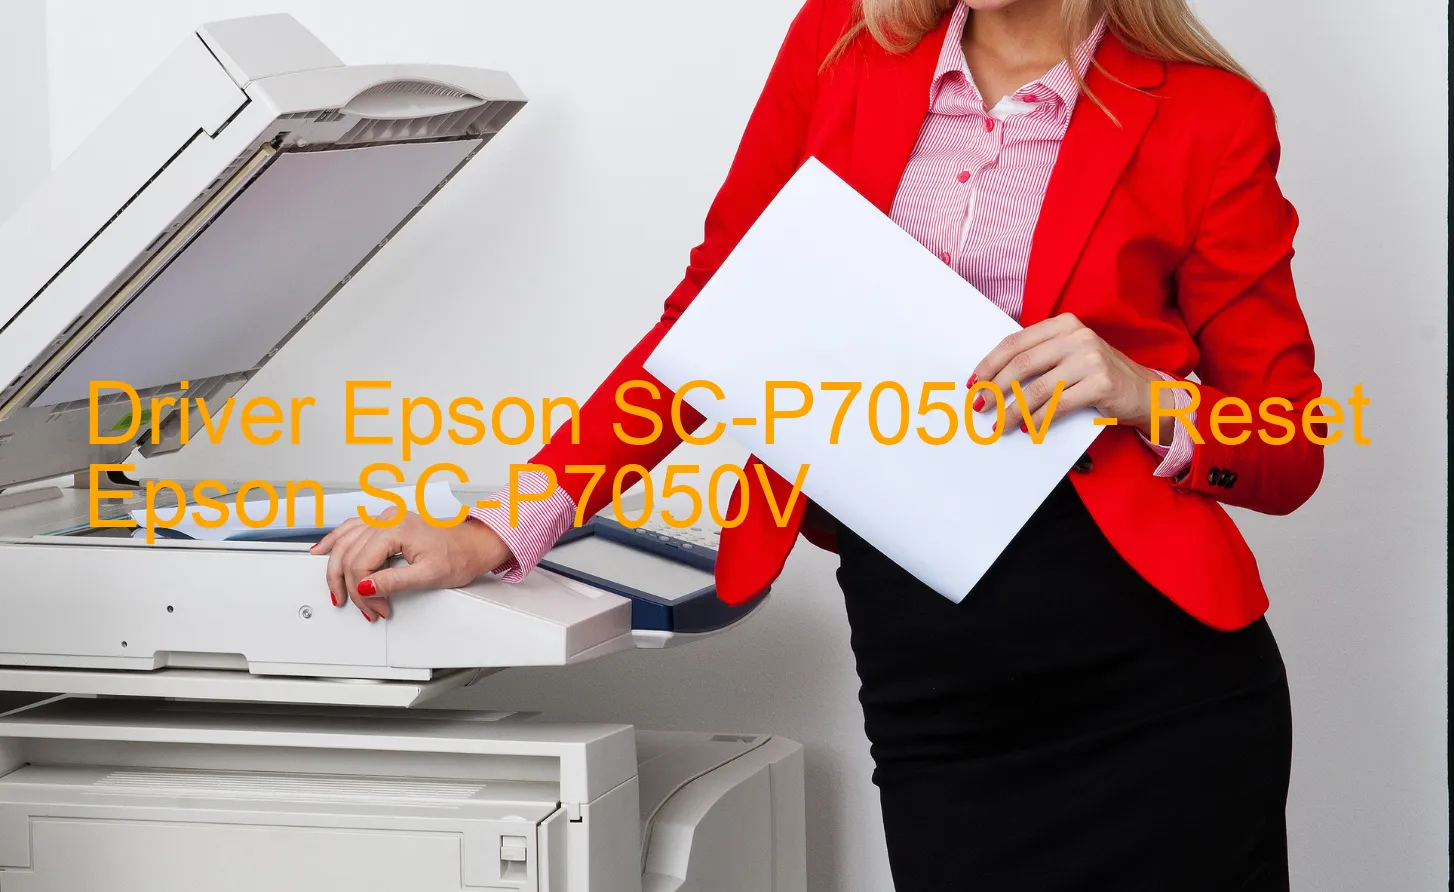 Epson SC-P7050Vのドライバー、Epson SC-P7050Vのリセットソフトウェア